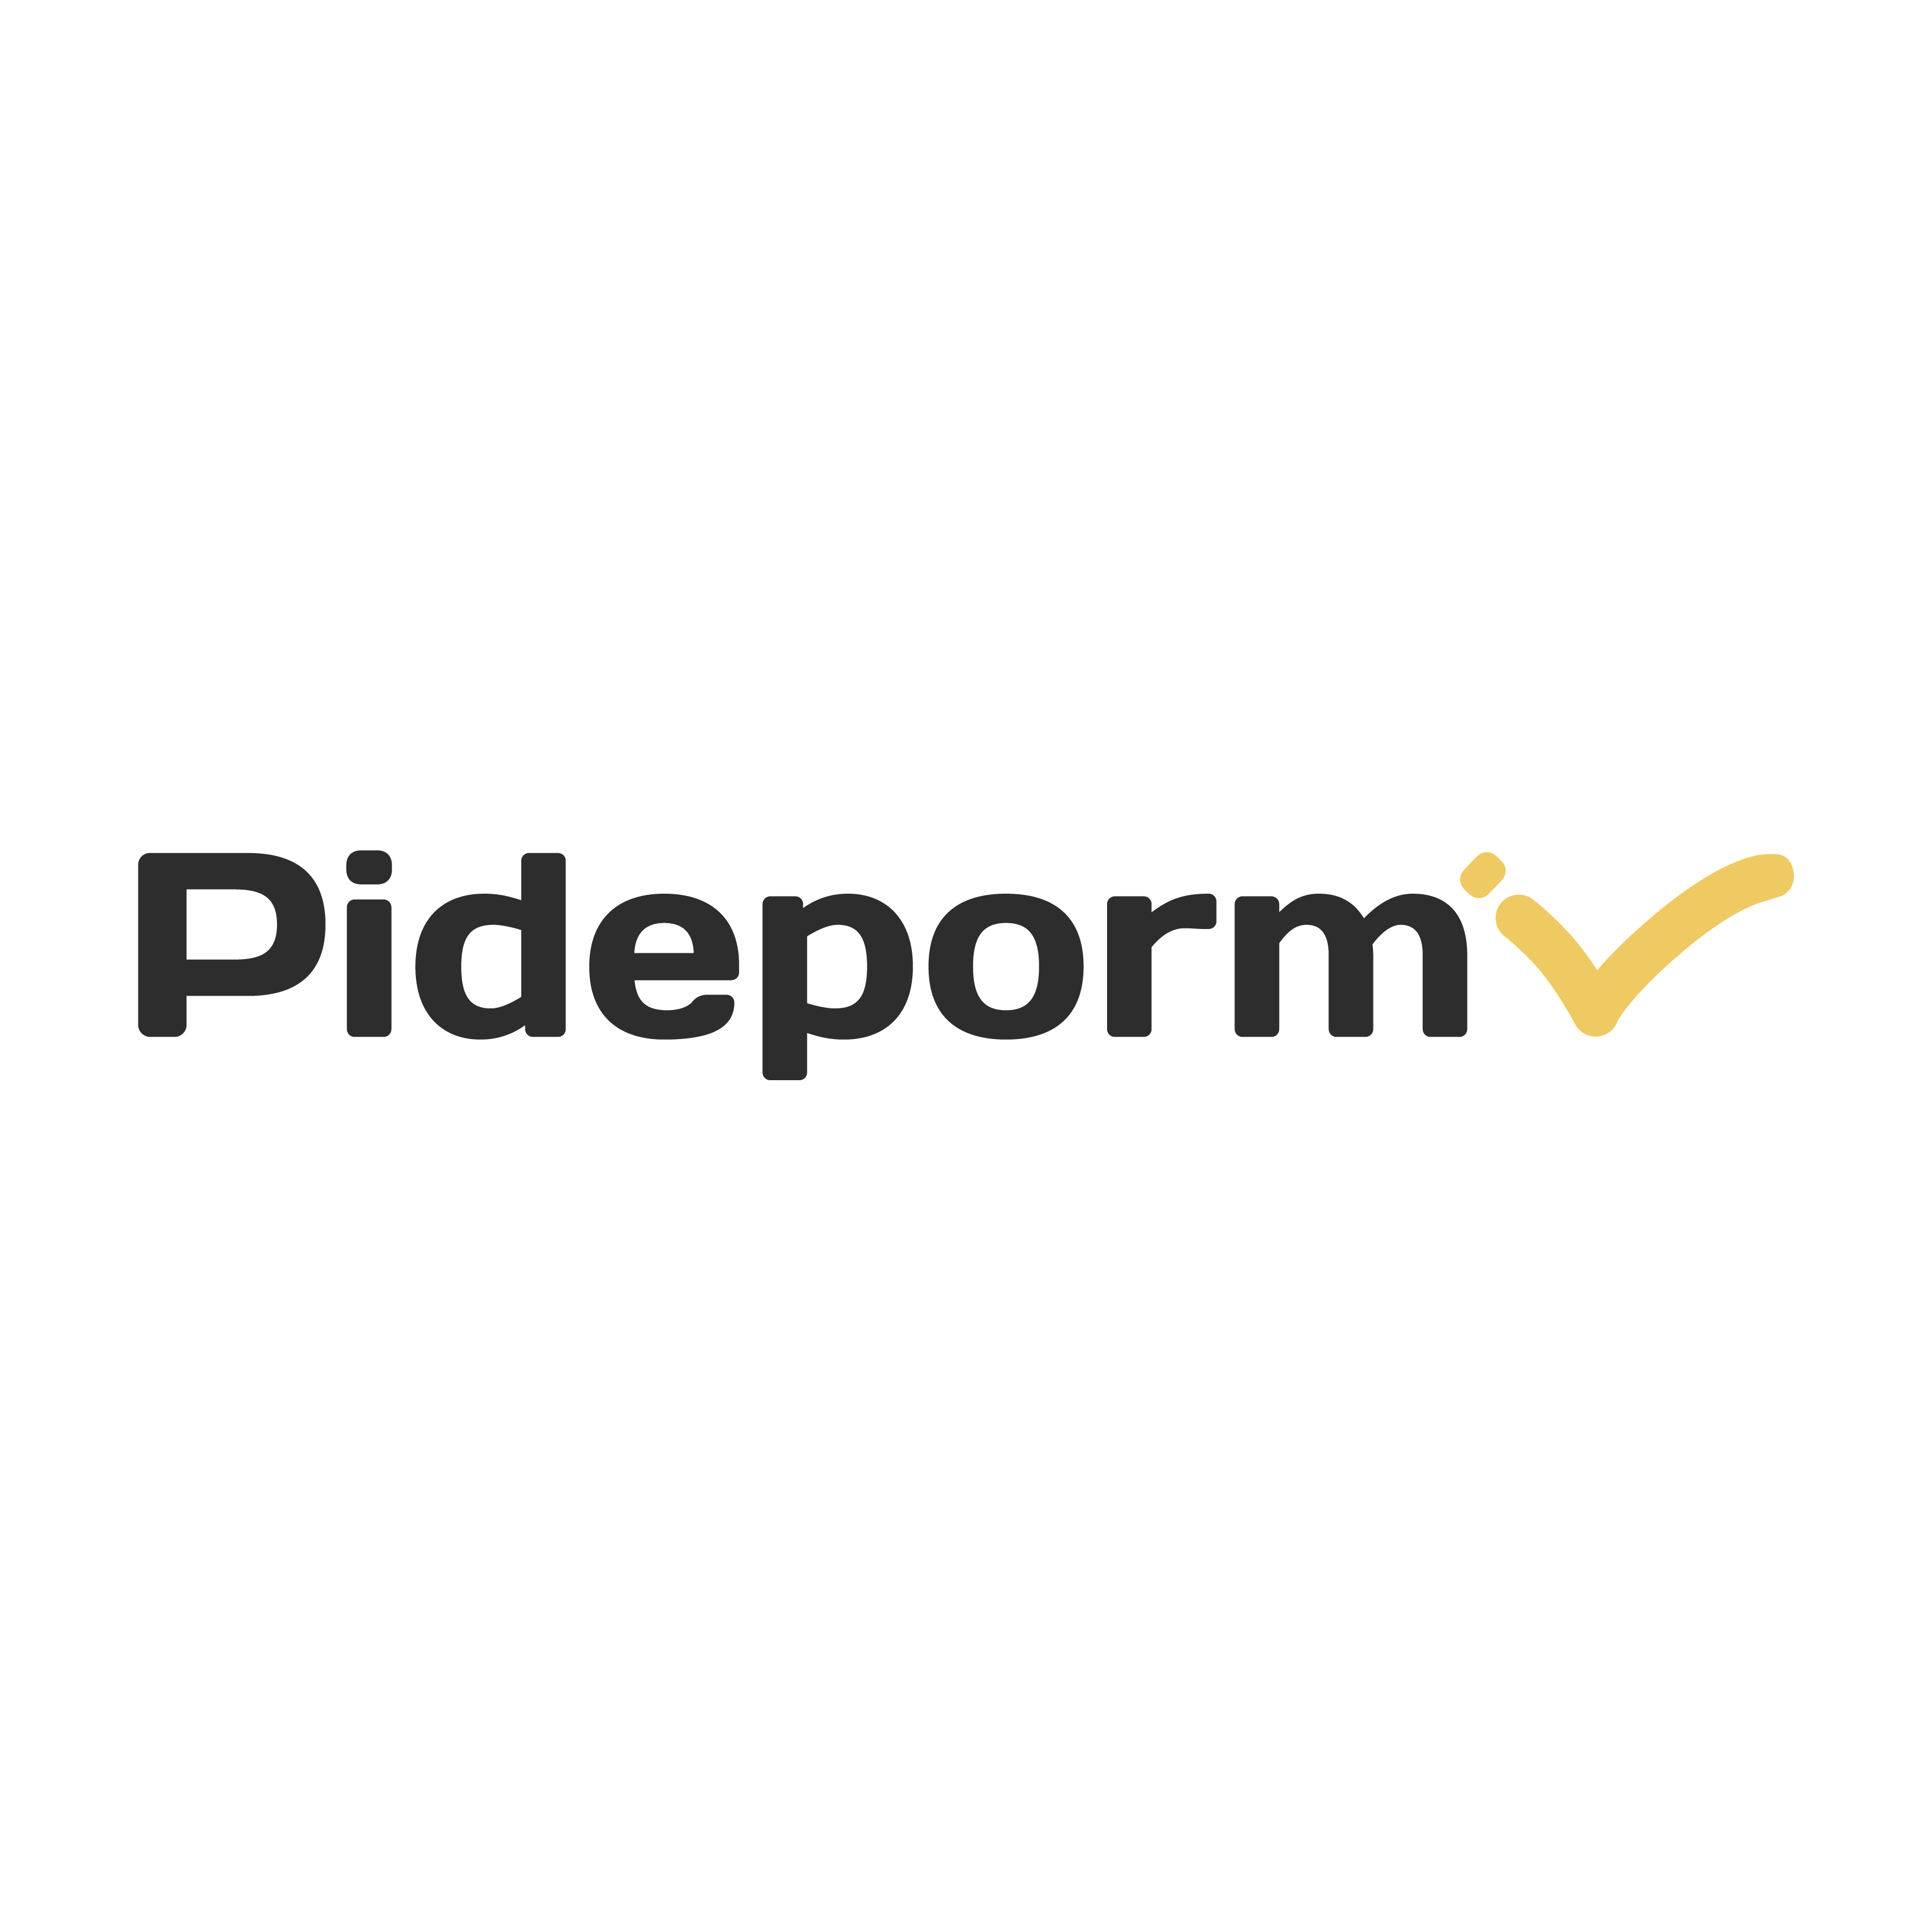 Pidepormi app